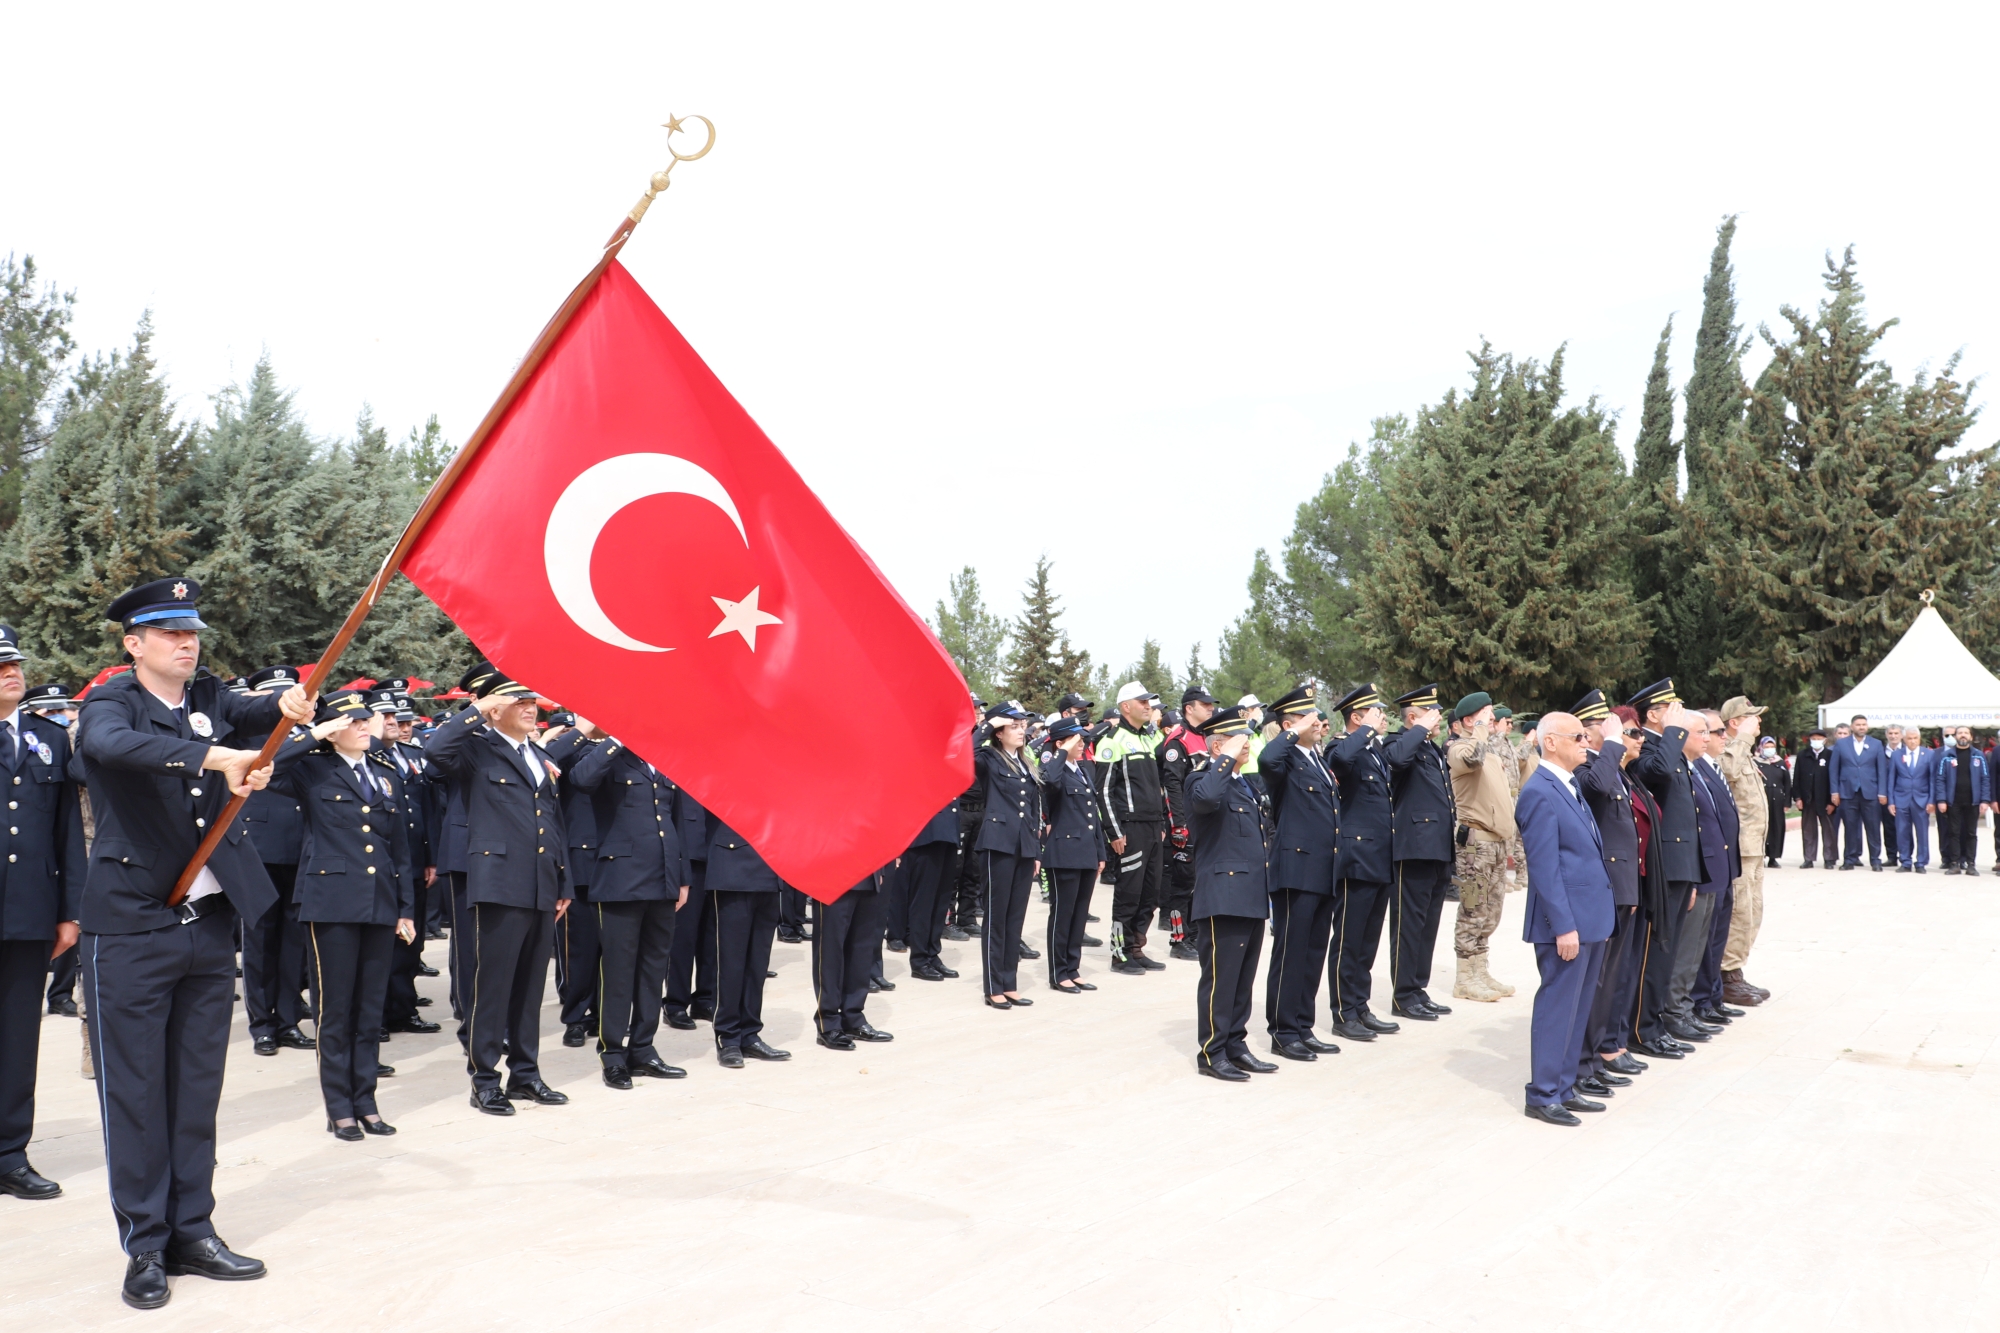 Türk Polis Teşkilatı’nın 177. Kuruluş Yıl Dönümü ve Polis Haftası dolayısıyla ilk tören Malatya Şehitliğinde düzenlendi ve şehitlerin mezarları ziyaret edildi.